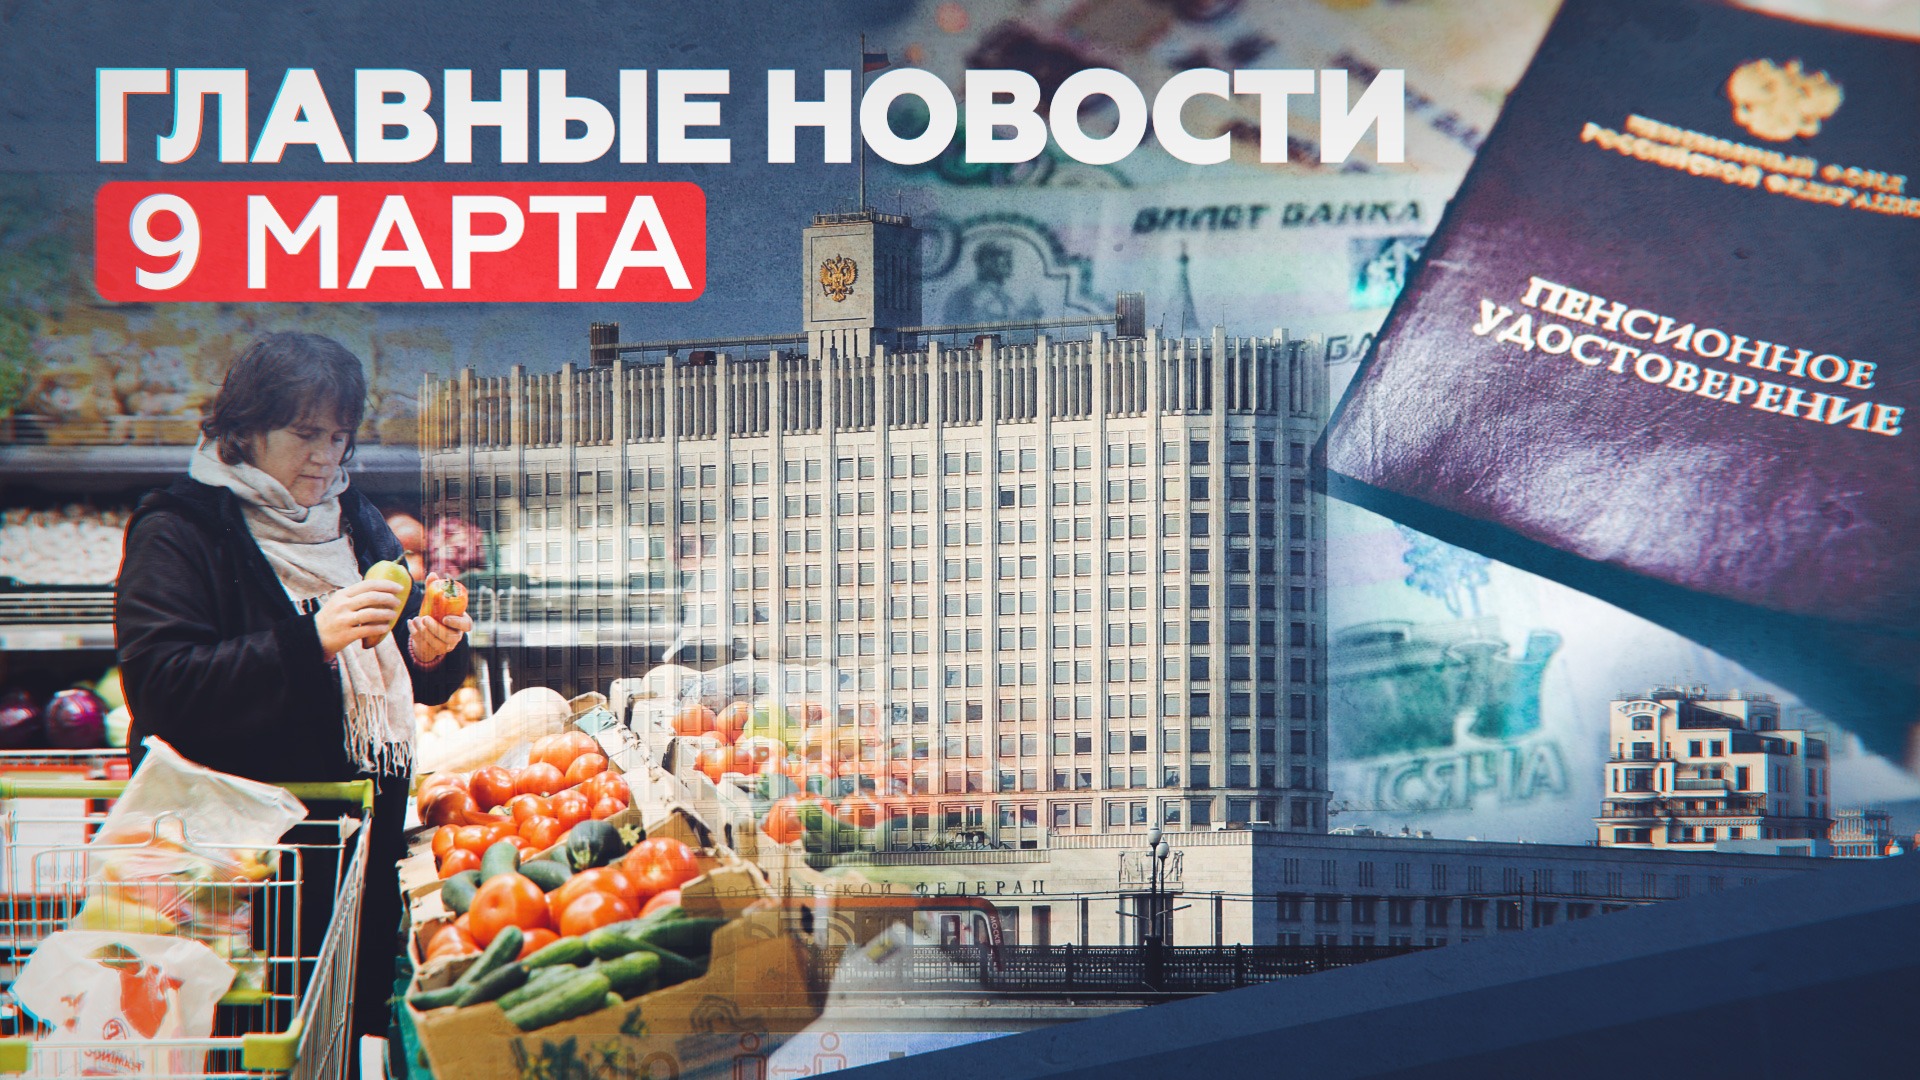 Новости дня 9 марта: мониторинг цен, одобрение «Спутника V» в ЕС, досрочная пенсия — RT на русском